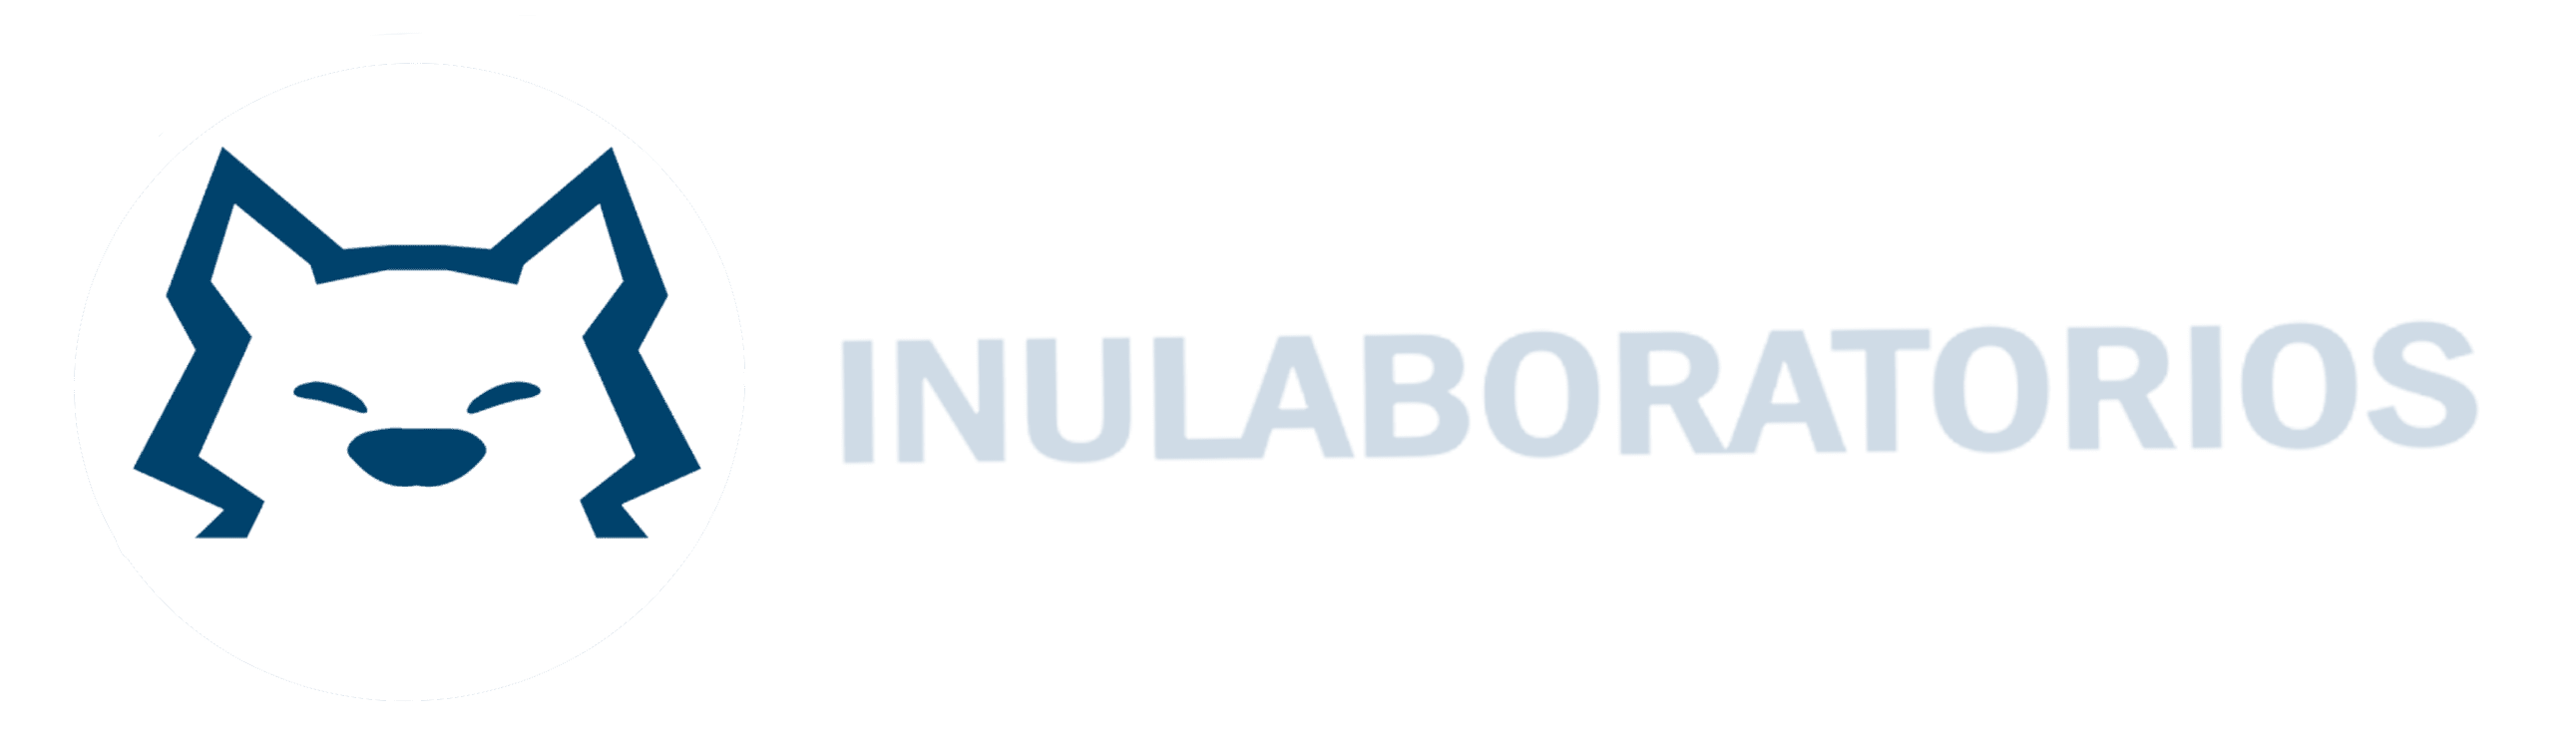 logo-inulab